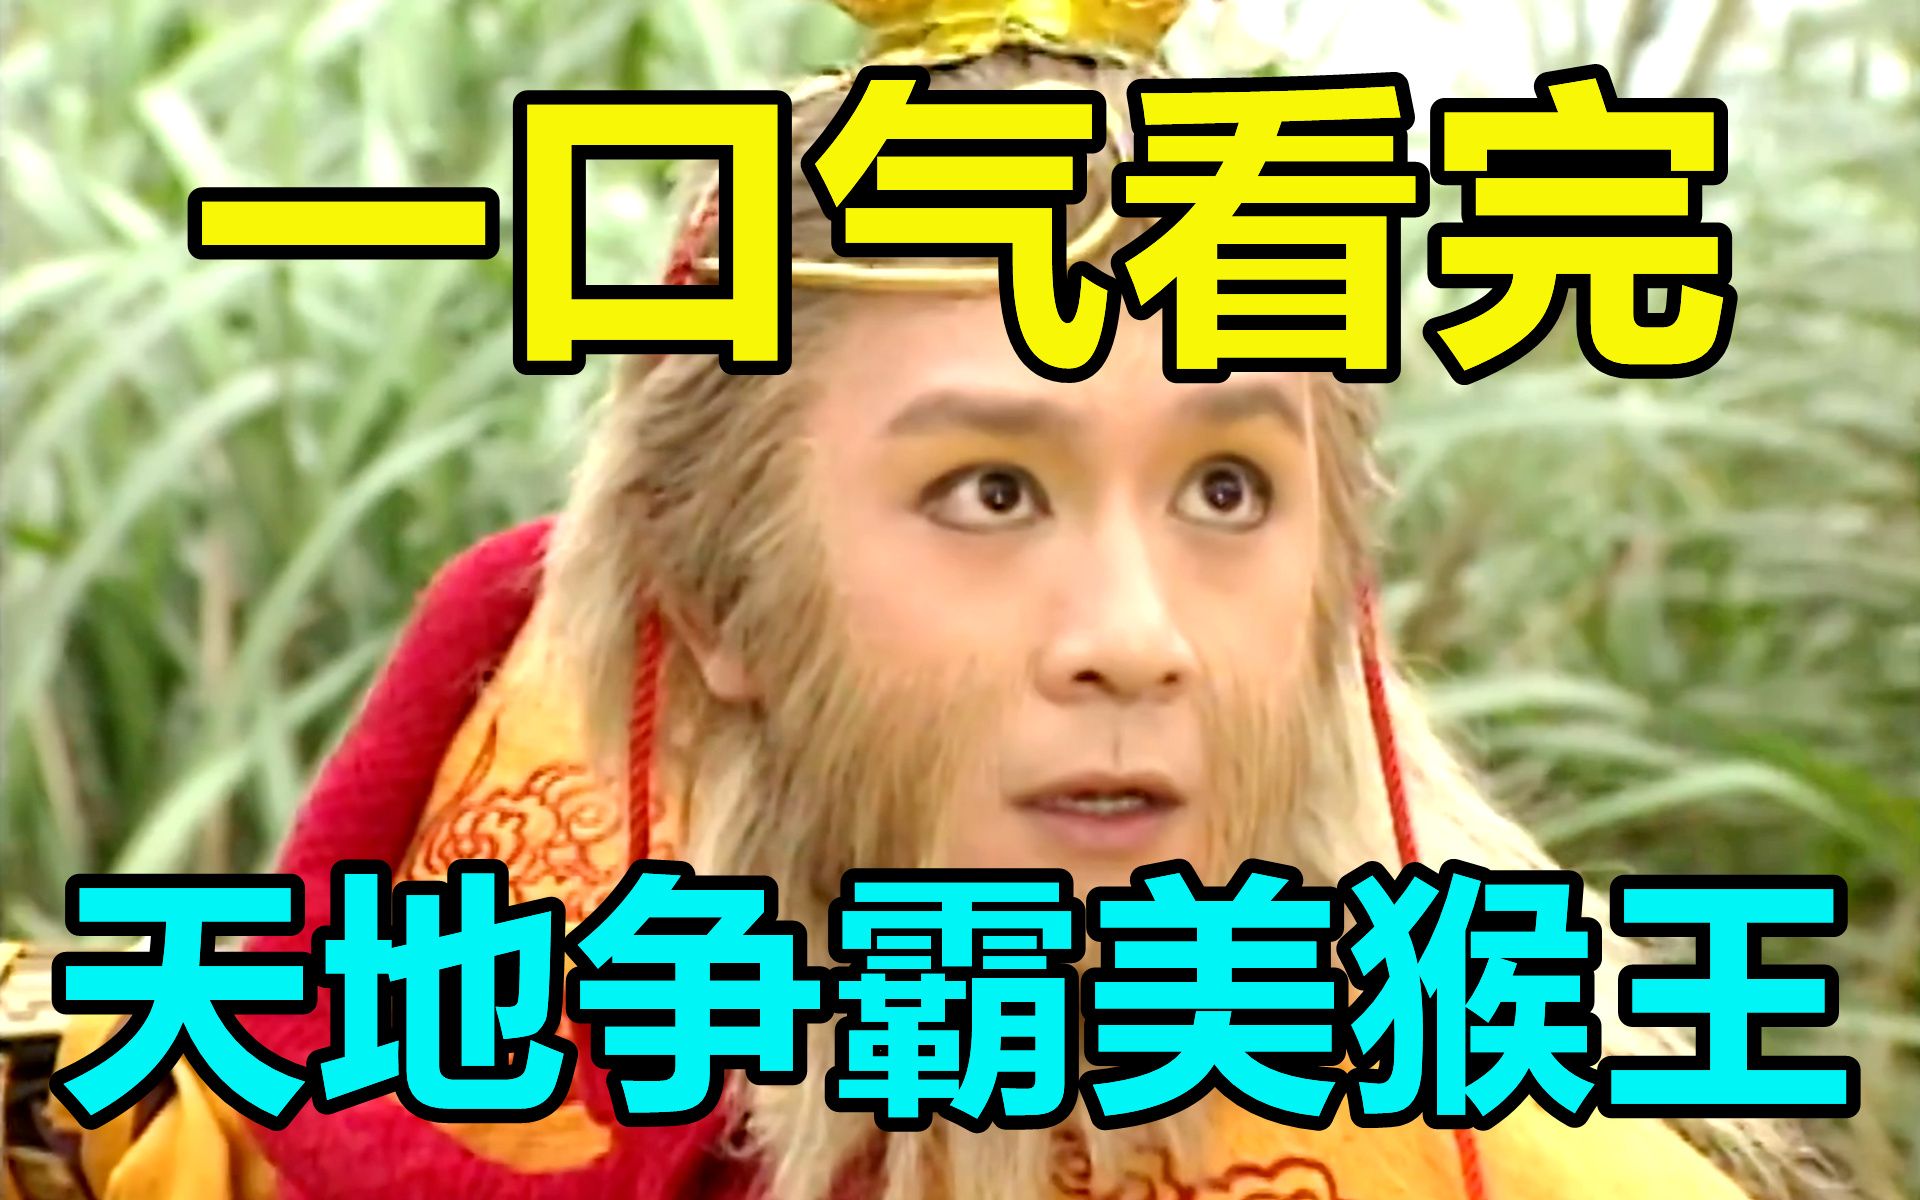 井龙王（1998年TVB版电视剧《天地争霸美猴王》中的角色）_百度百科